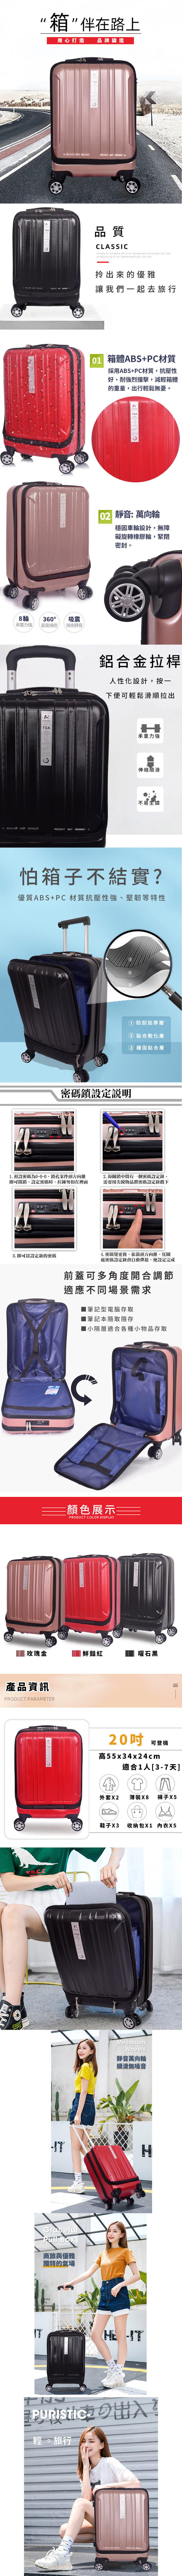 自由空間前開式鋁合金20吋行李箱 (TSA海關鎖/360度大雙輪)